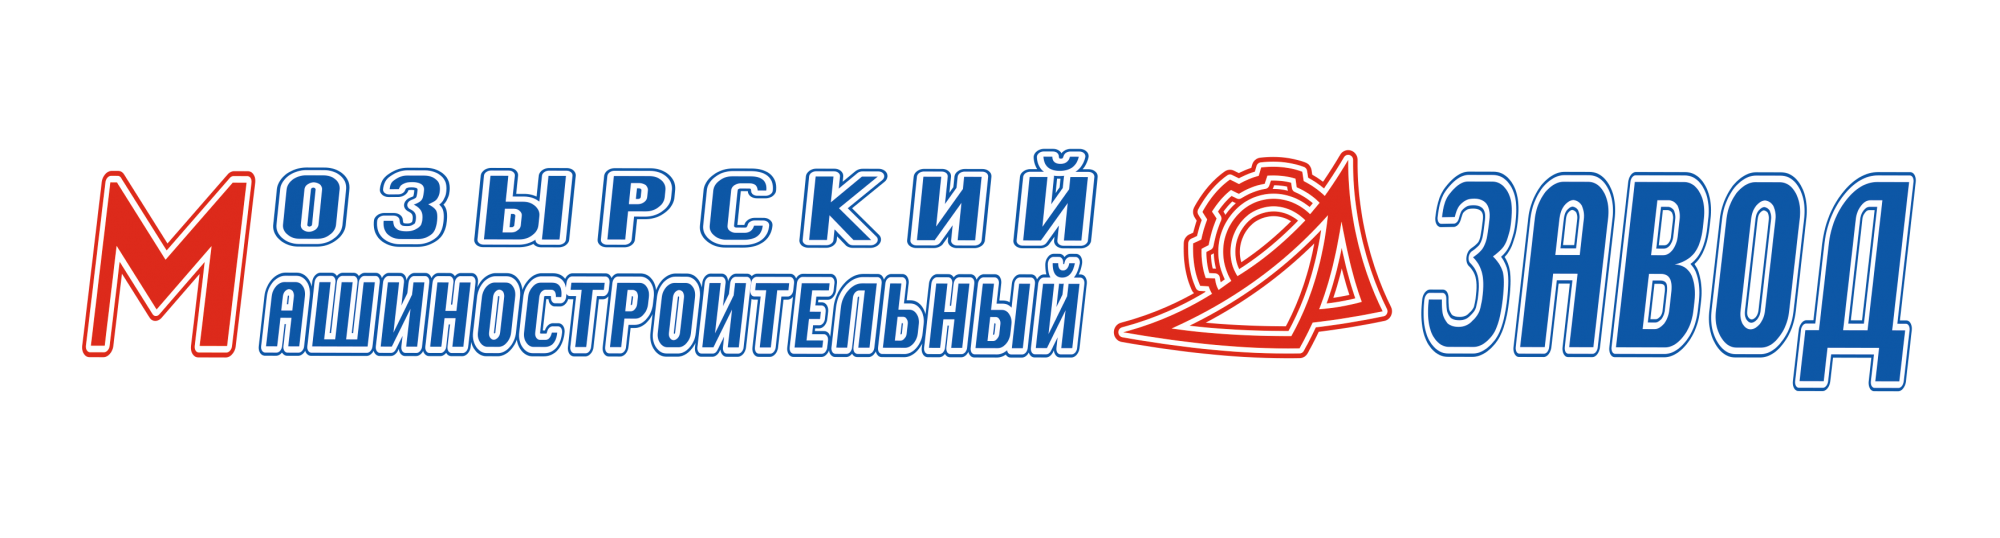 Логотип МозМЗ.png